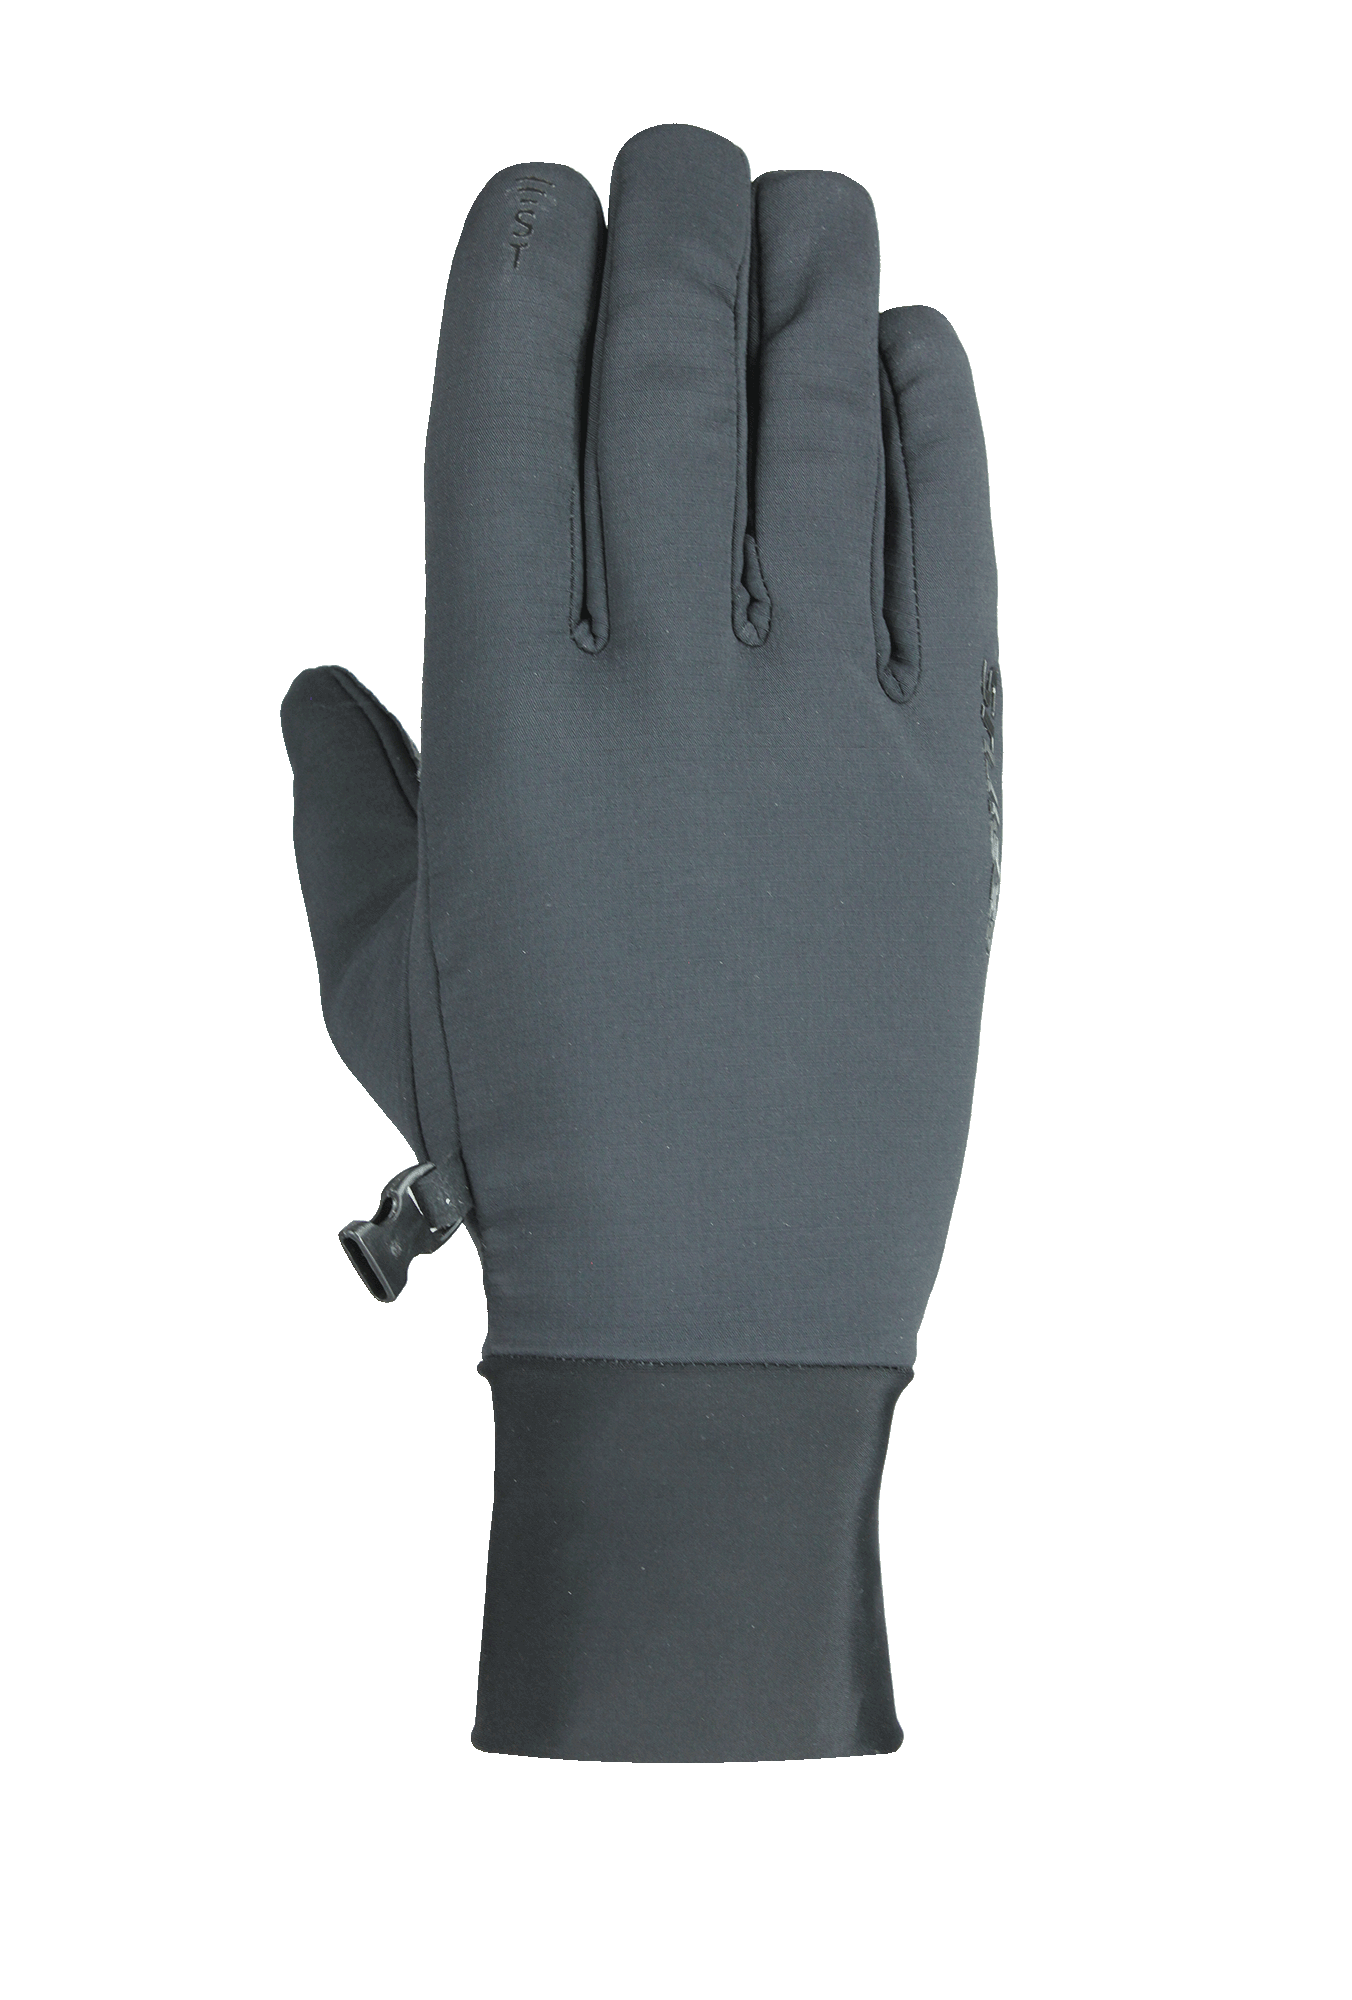 Gore-Tex® Infinium™ All Glove – Seirus Innovative Accessories, Inc.